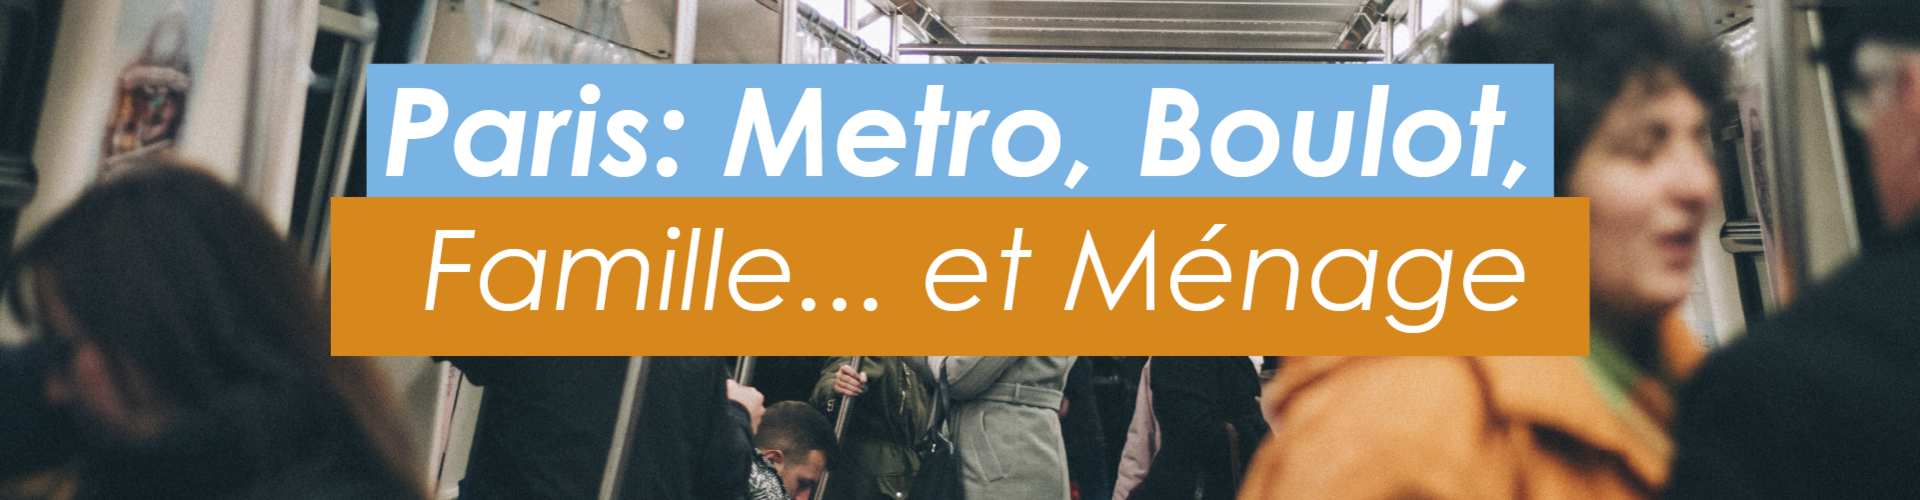 img_personne_metro_paris